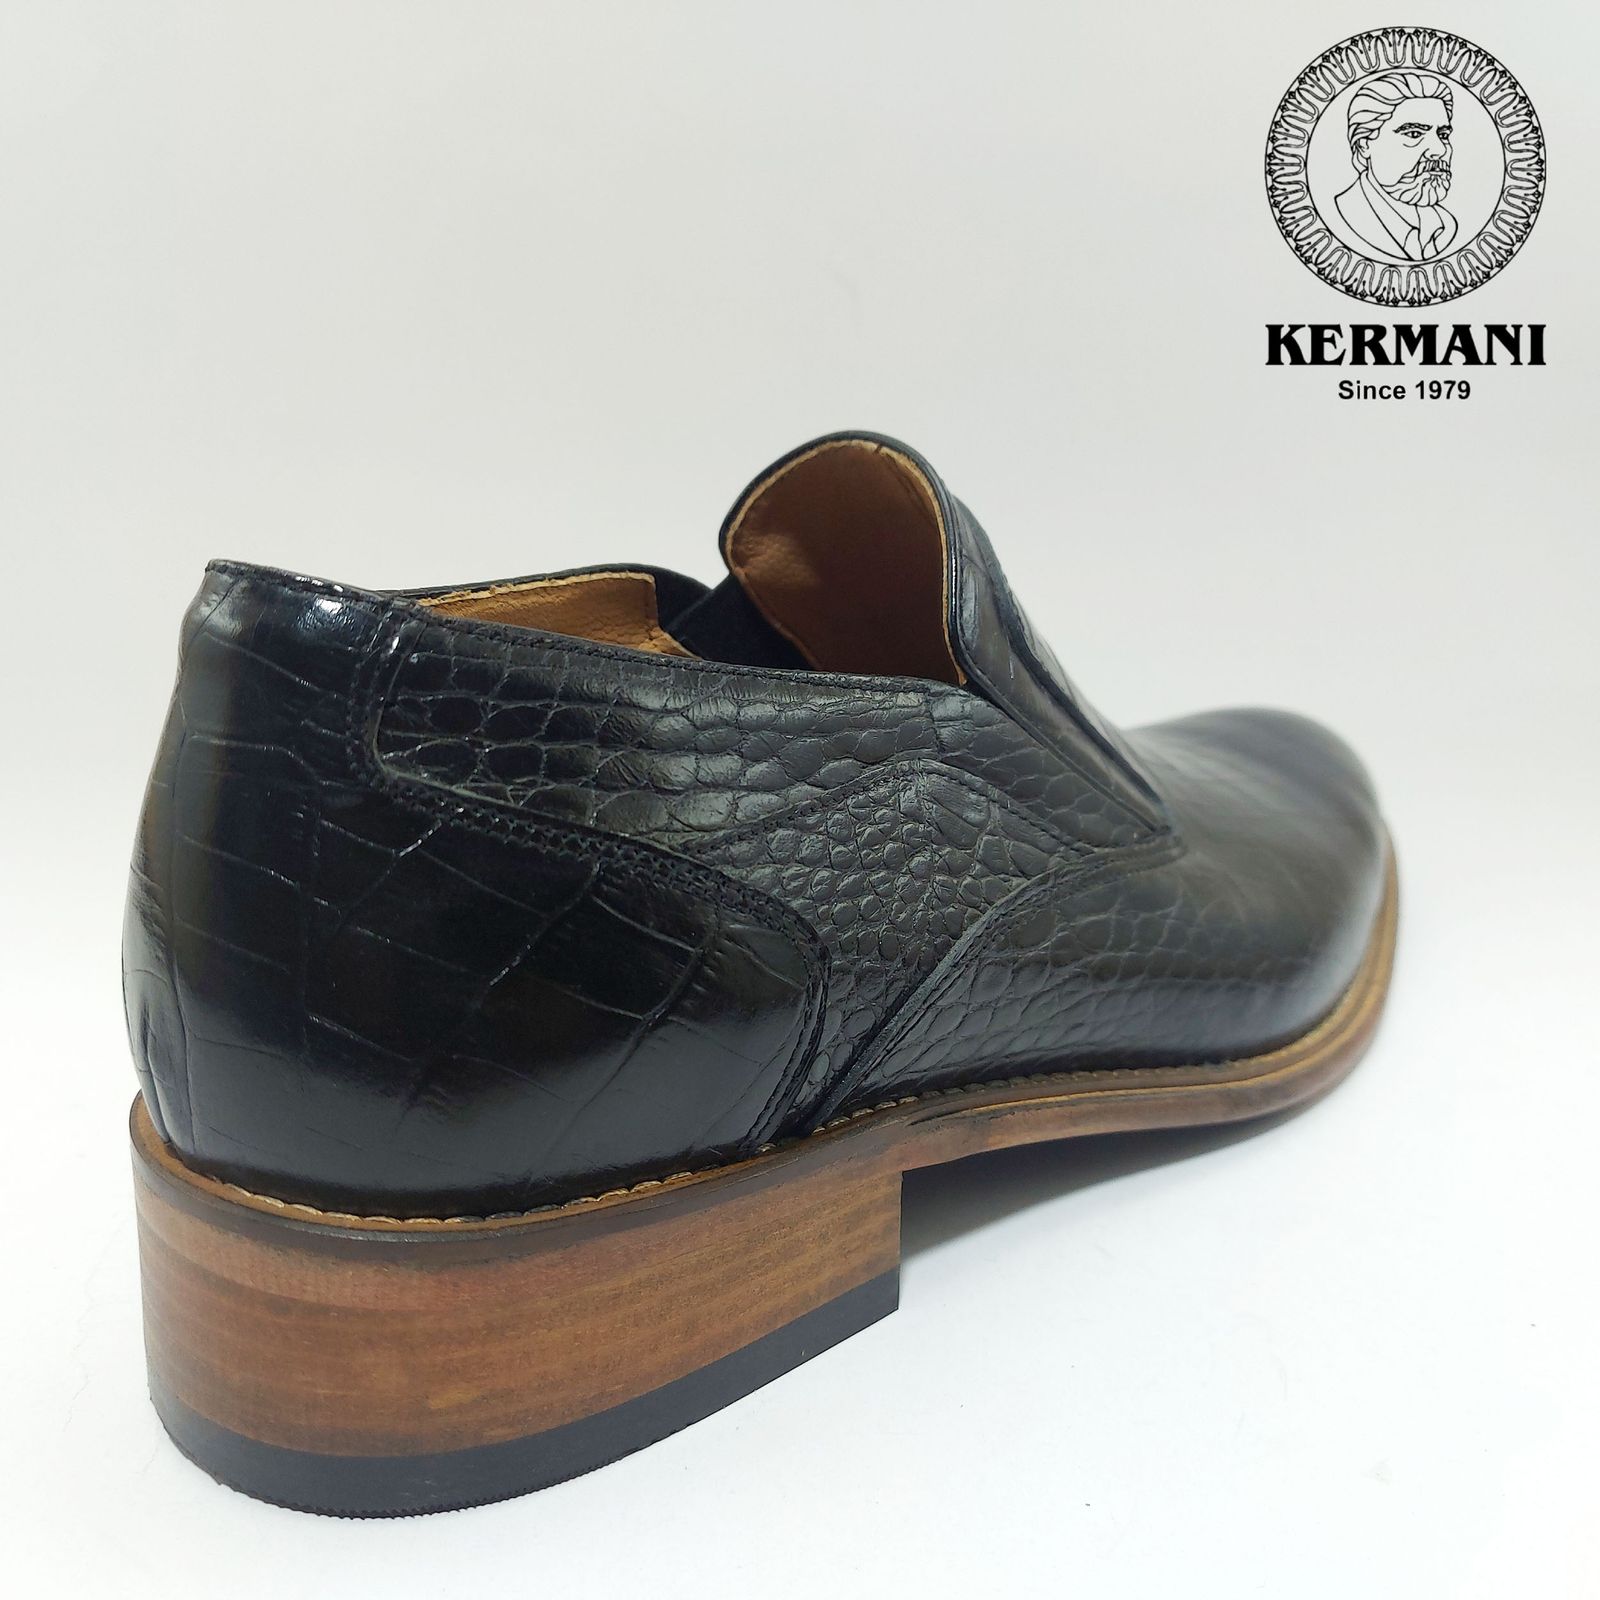 کفش مردانه کرمانی مدل تمام چرم طبیعی کروکو دستدوز کد 350 رنگ مشکی -  - 2